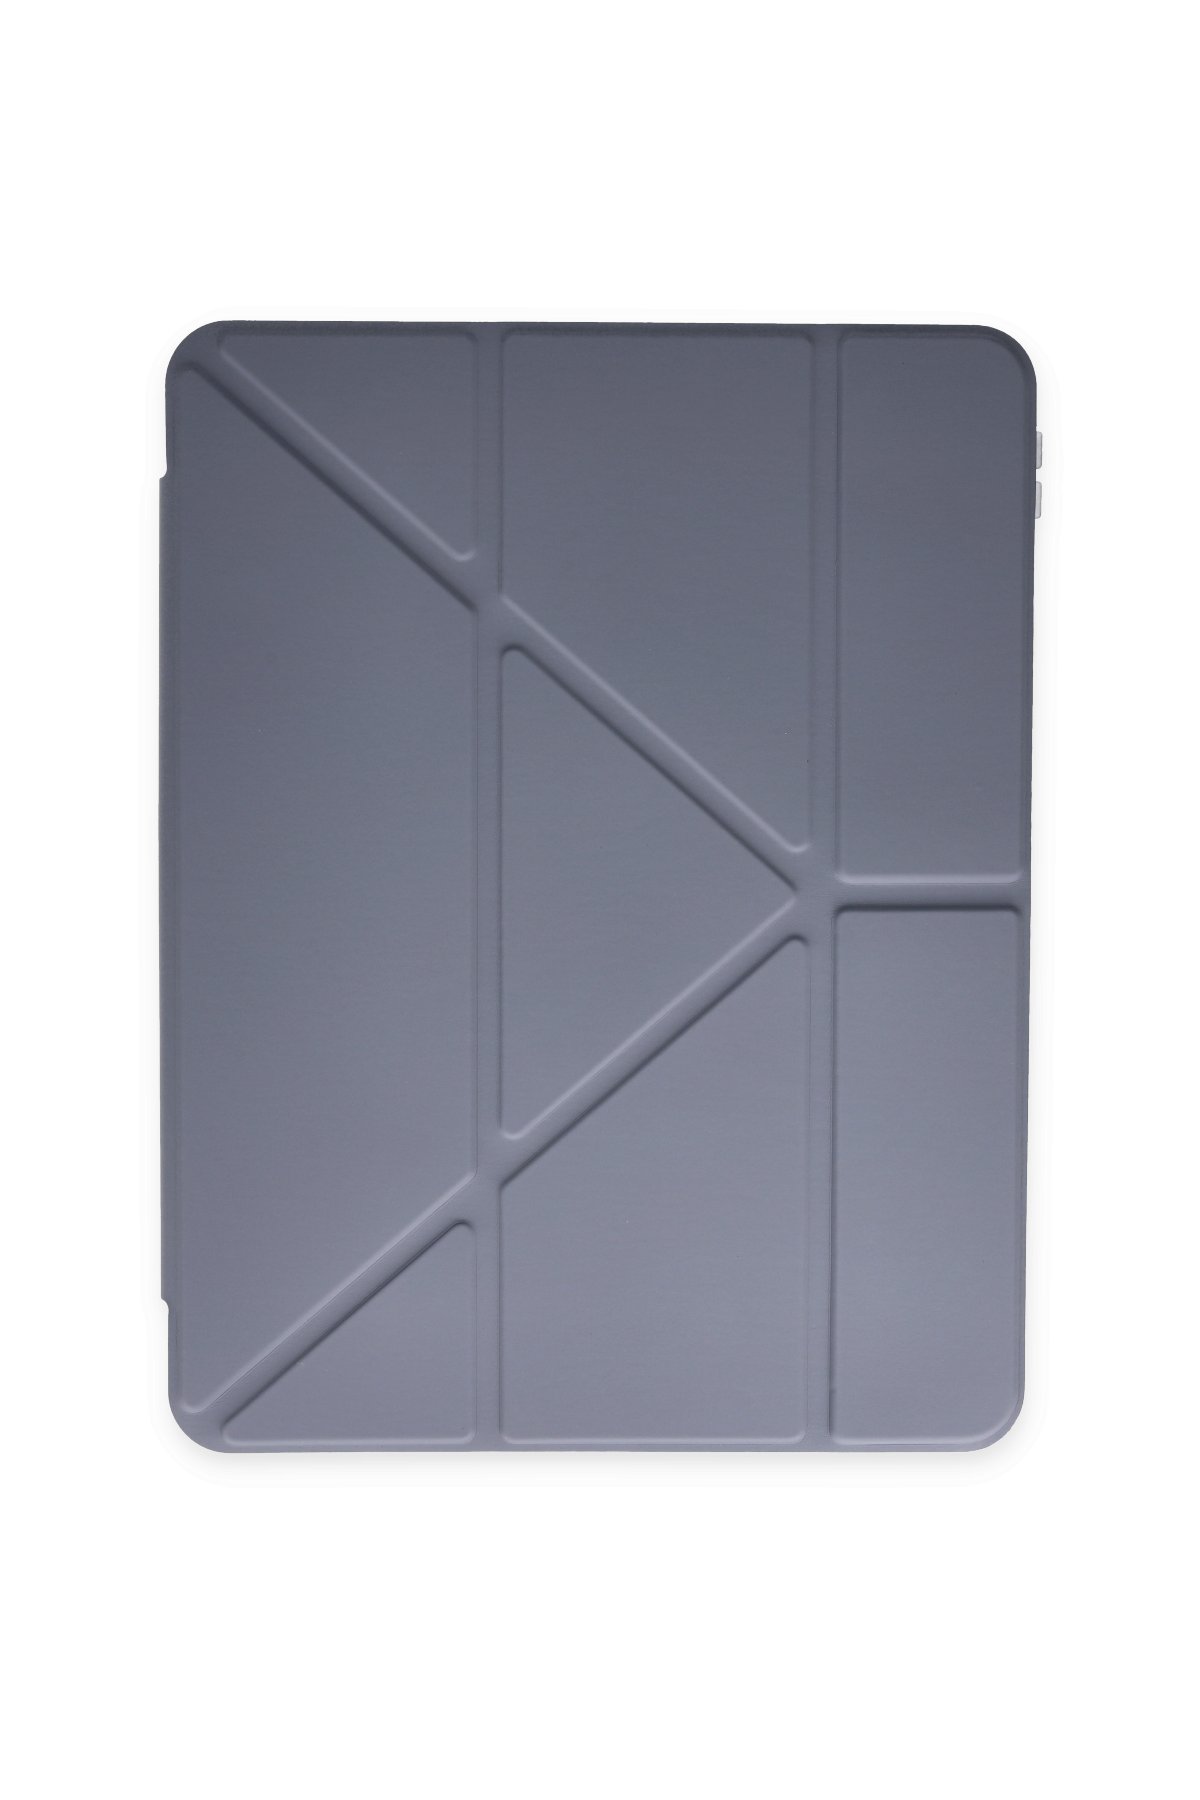 Newface iPad Air 2 9.7 Kılıf Kalemlikli Mars Tablet Kılıfı - Koyu Yeşil